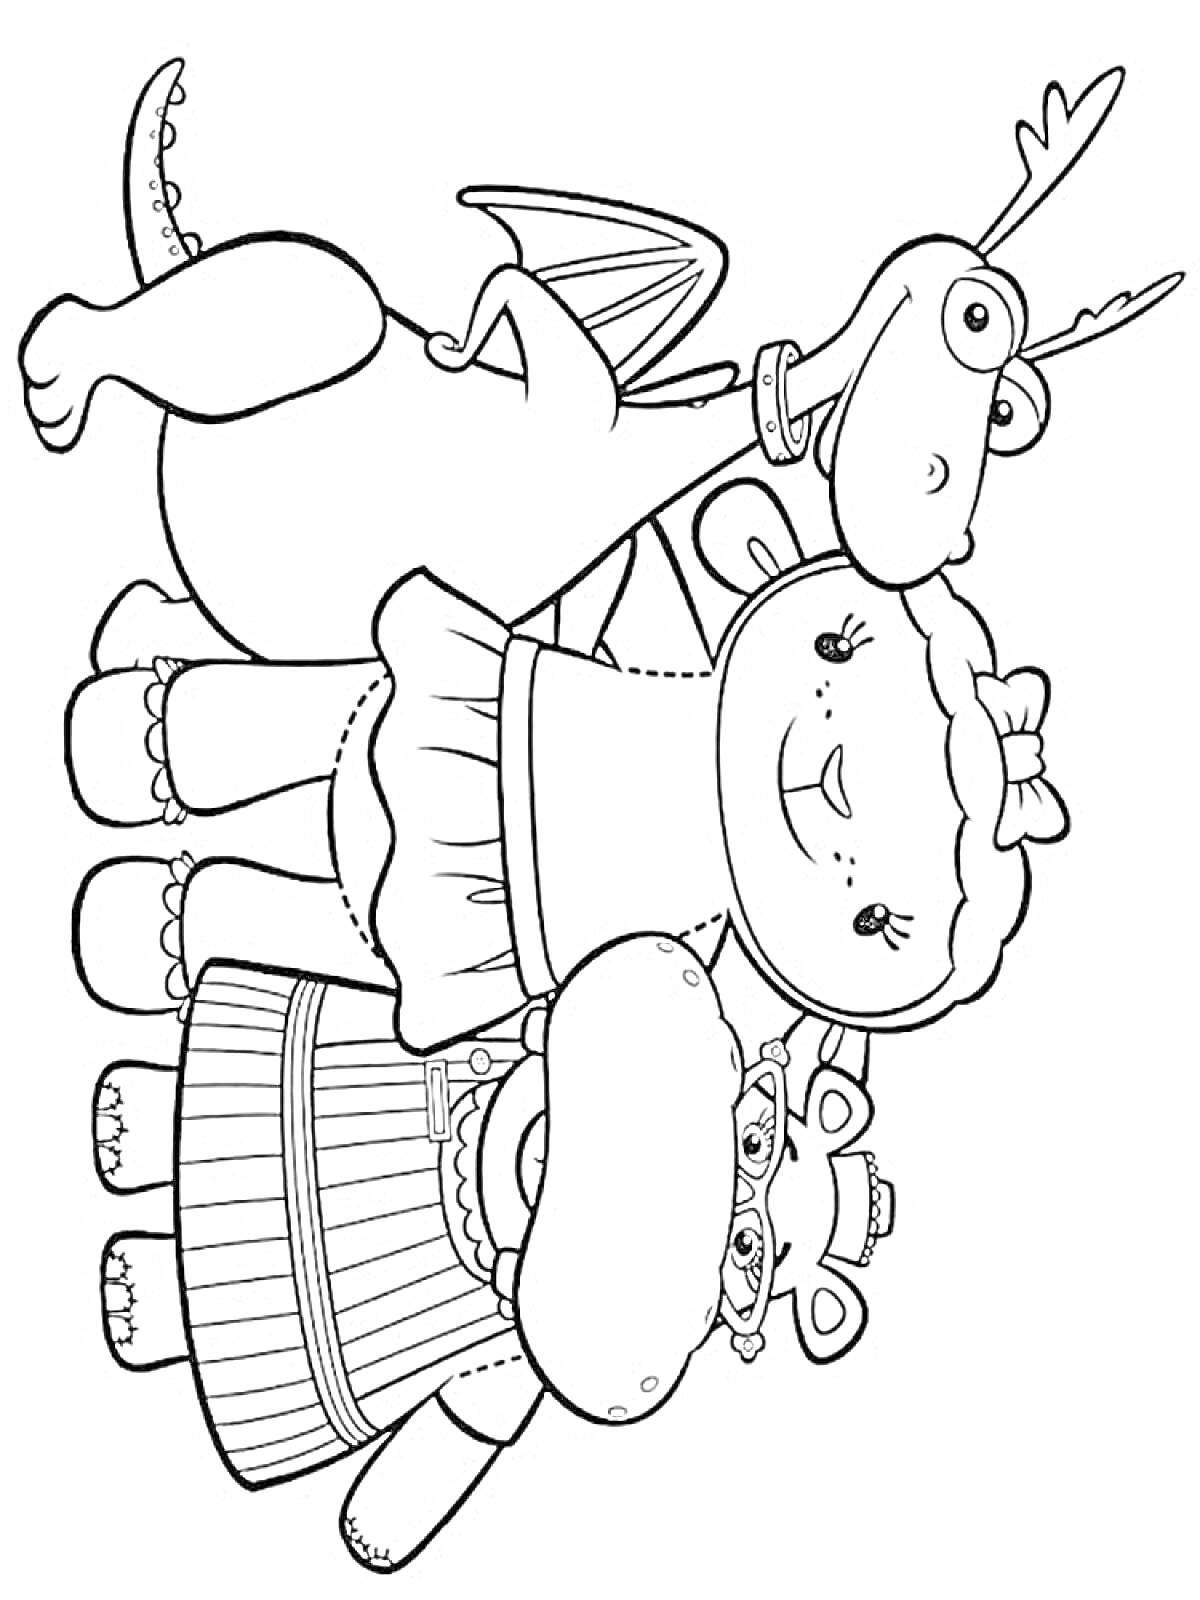 Раскраска Дракон, овечка и бегемот в одежде из мультфильма 